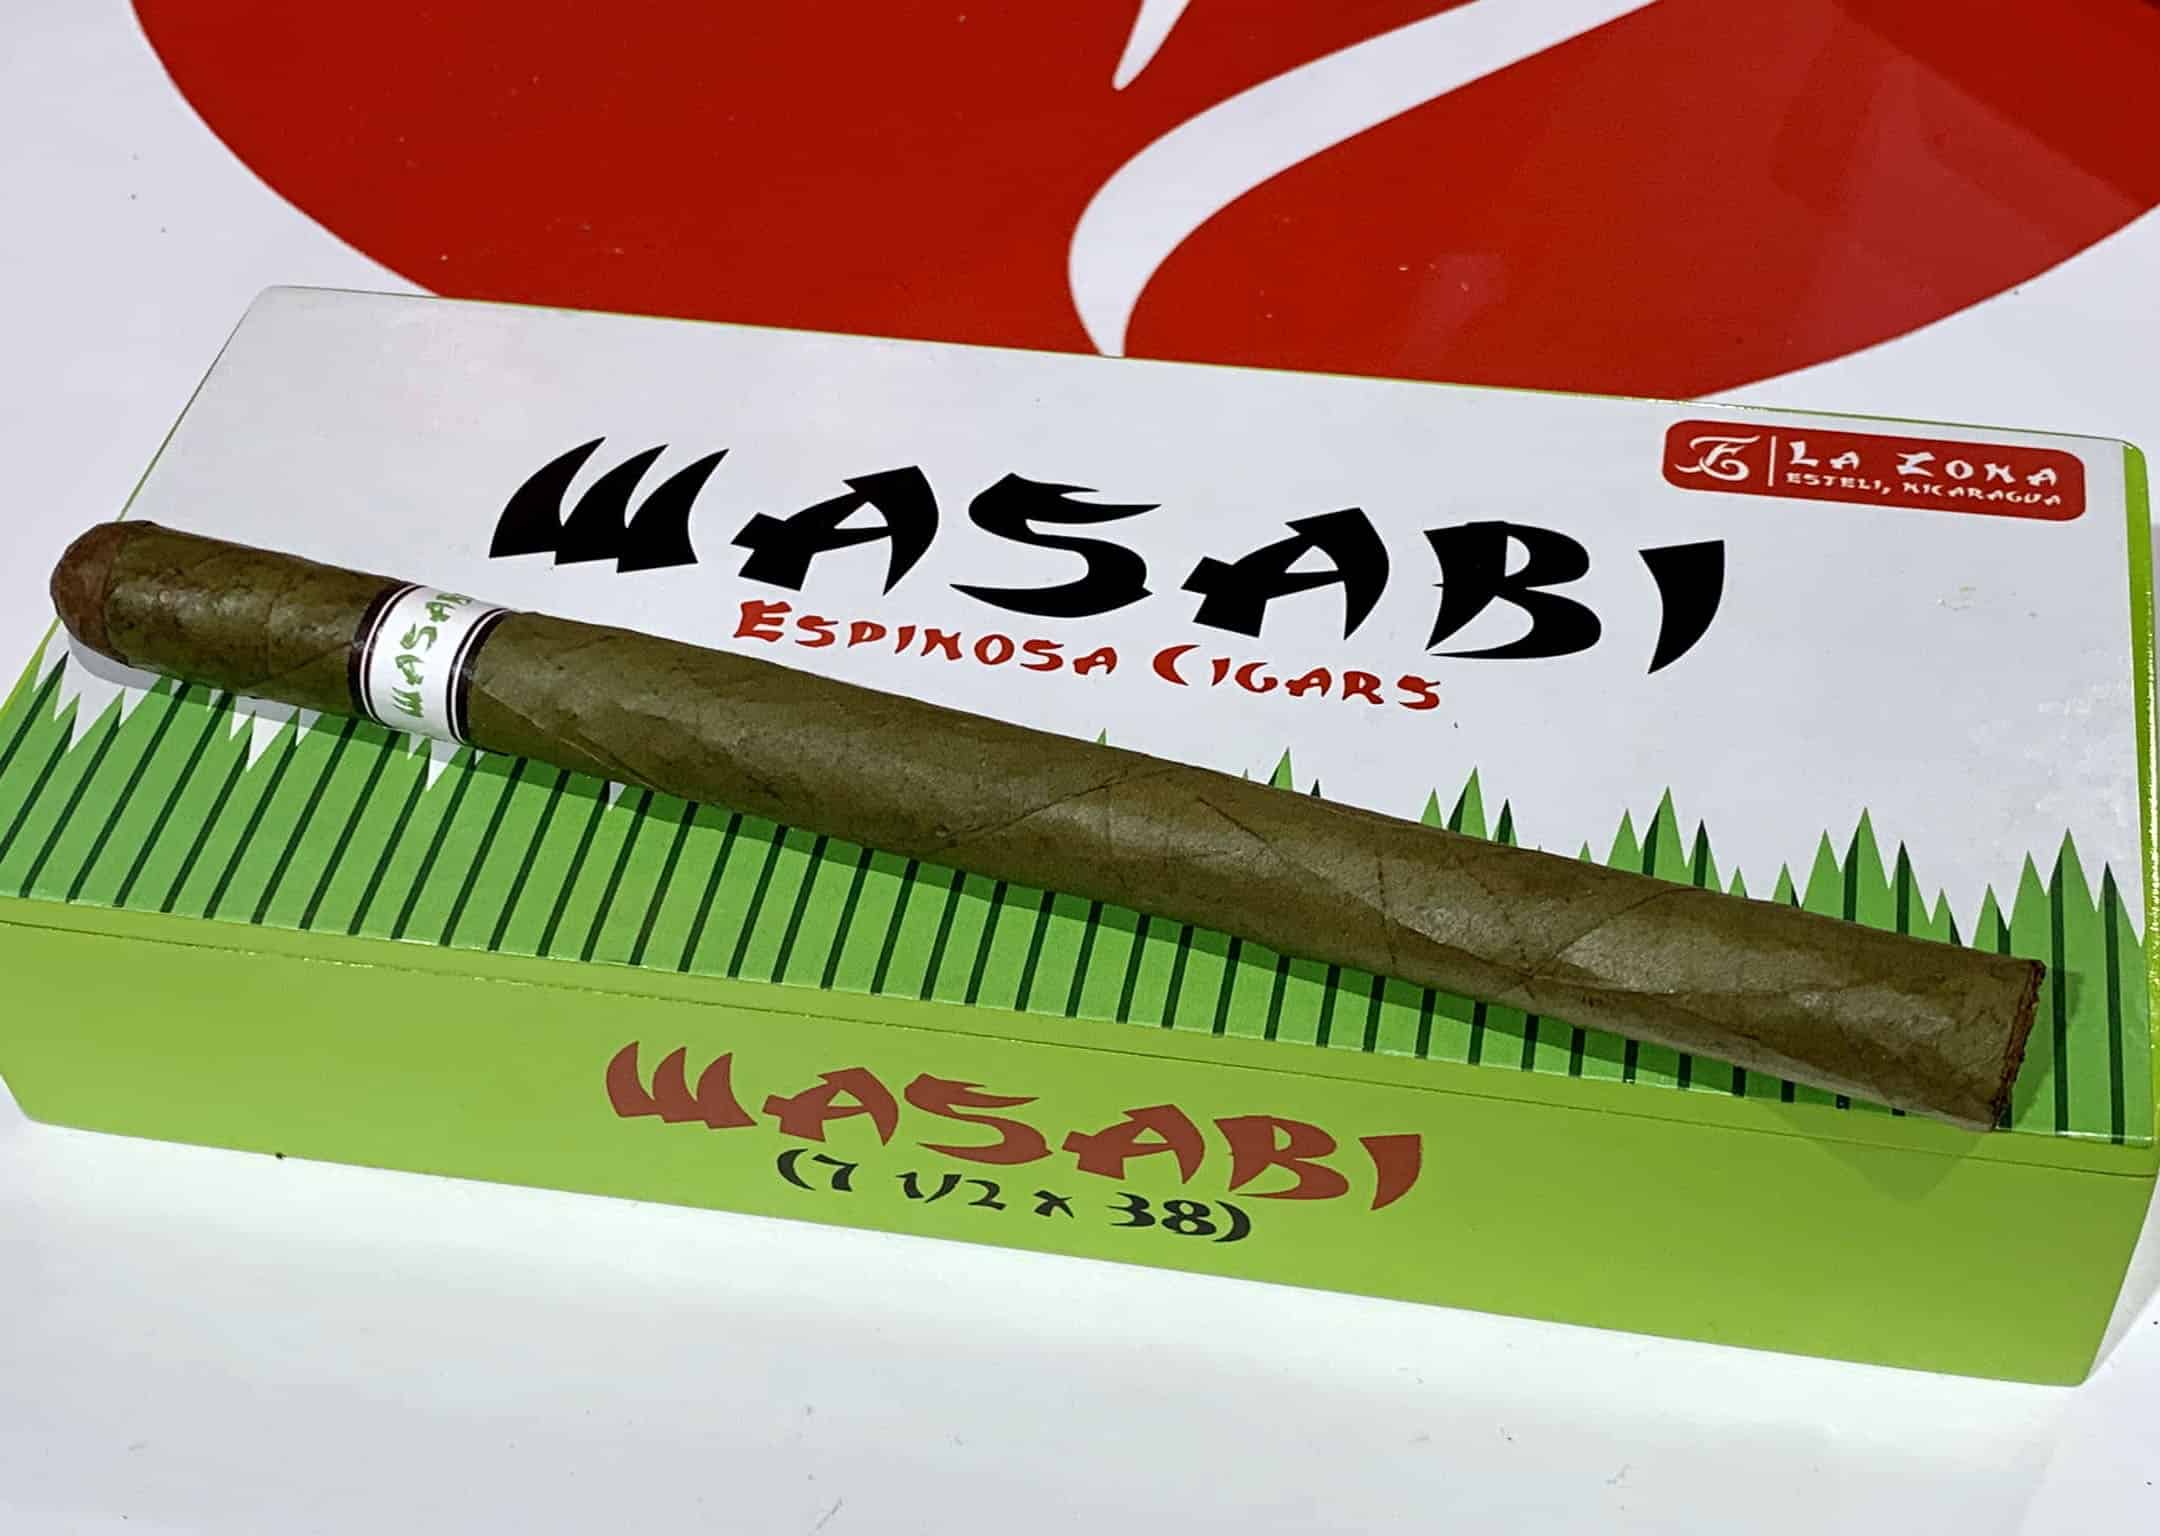 Espinosa Cigars Announces Wasabi Lancero - Cigar News